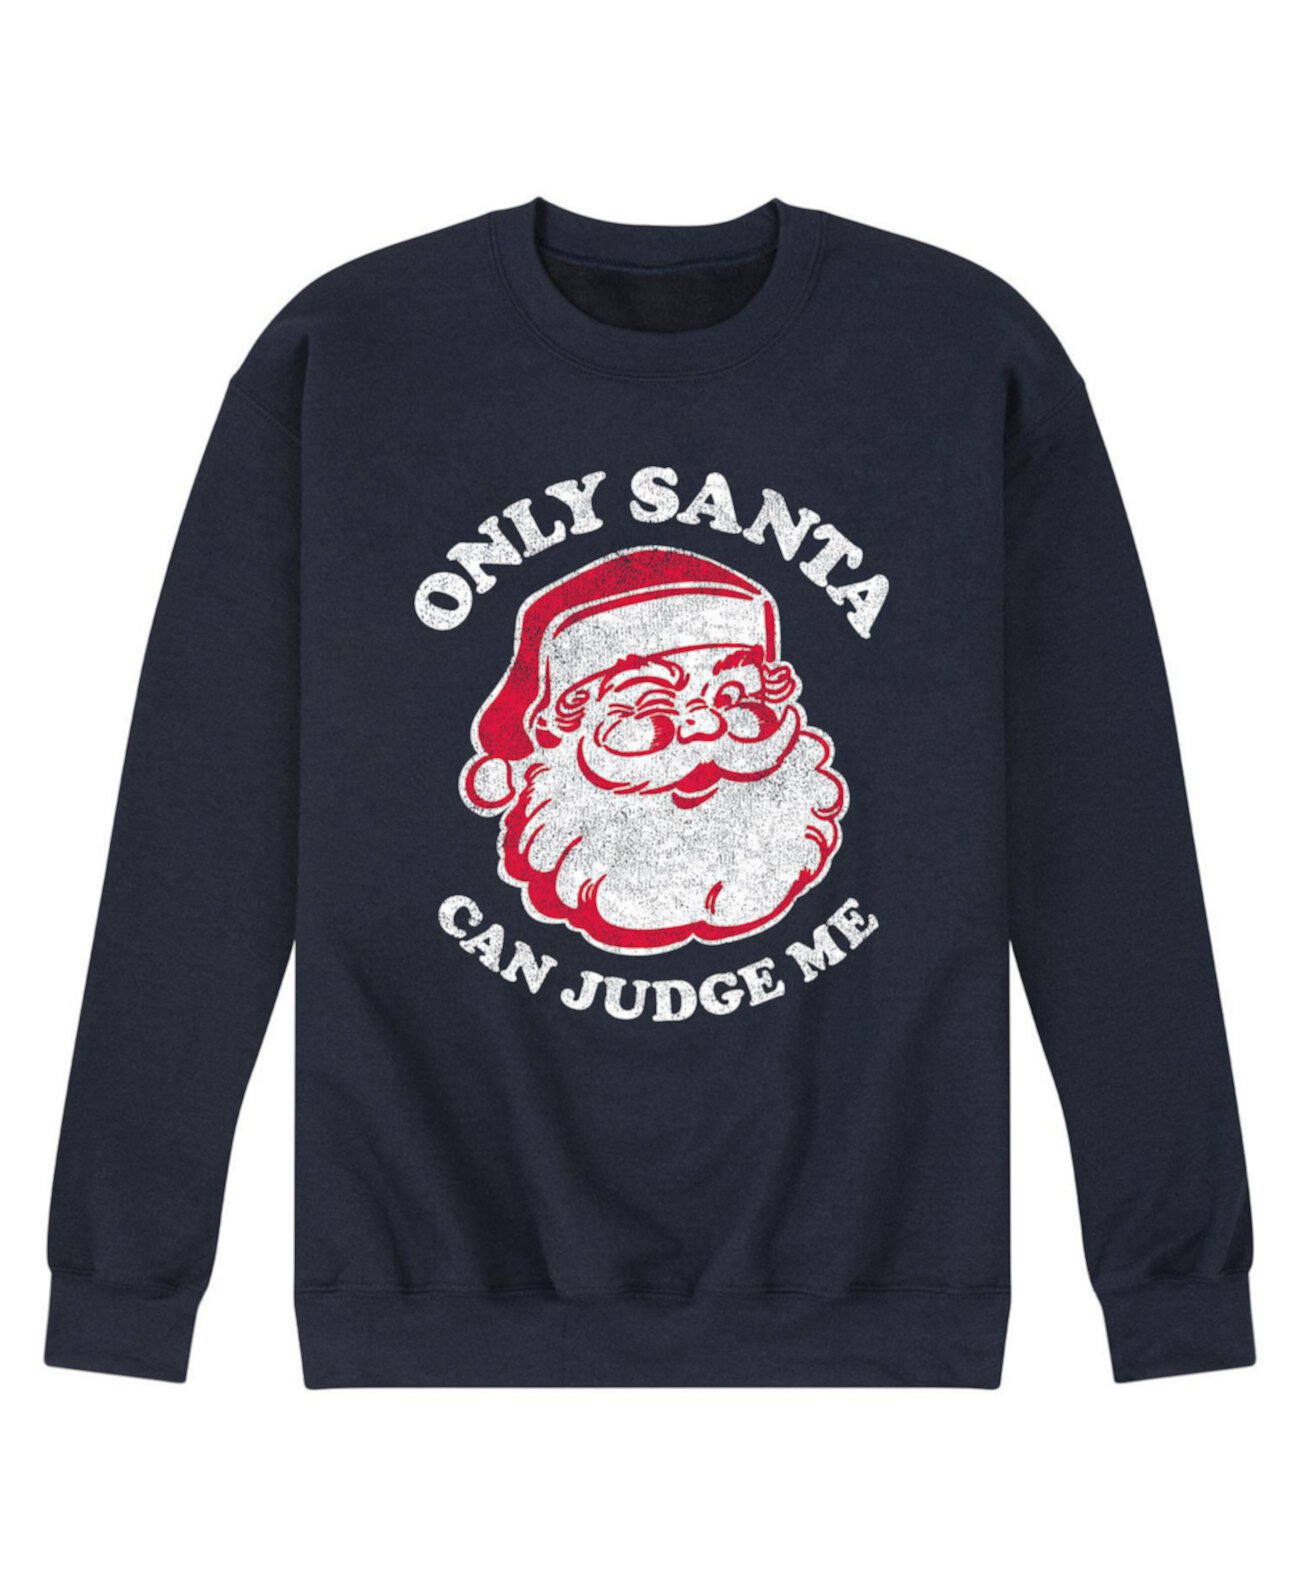 Мужская флисовая футболка Only Santa Can Judge AIRWAVES